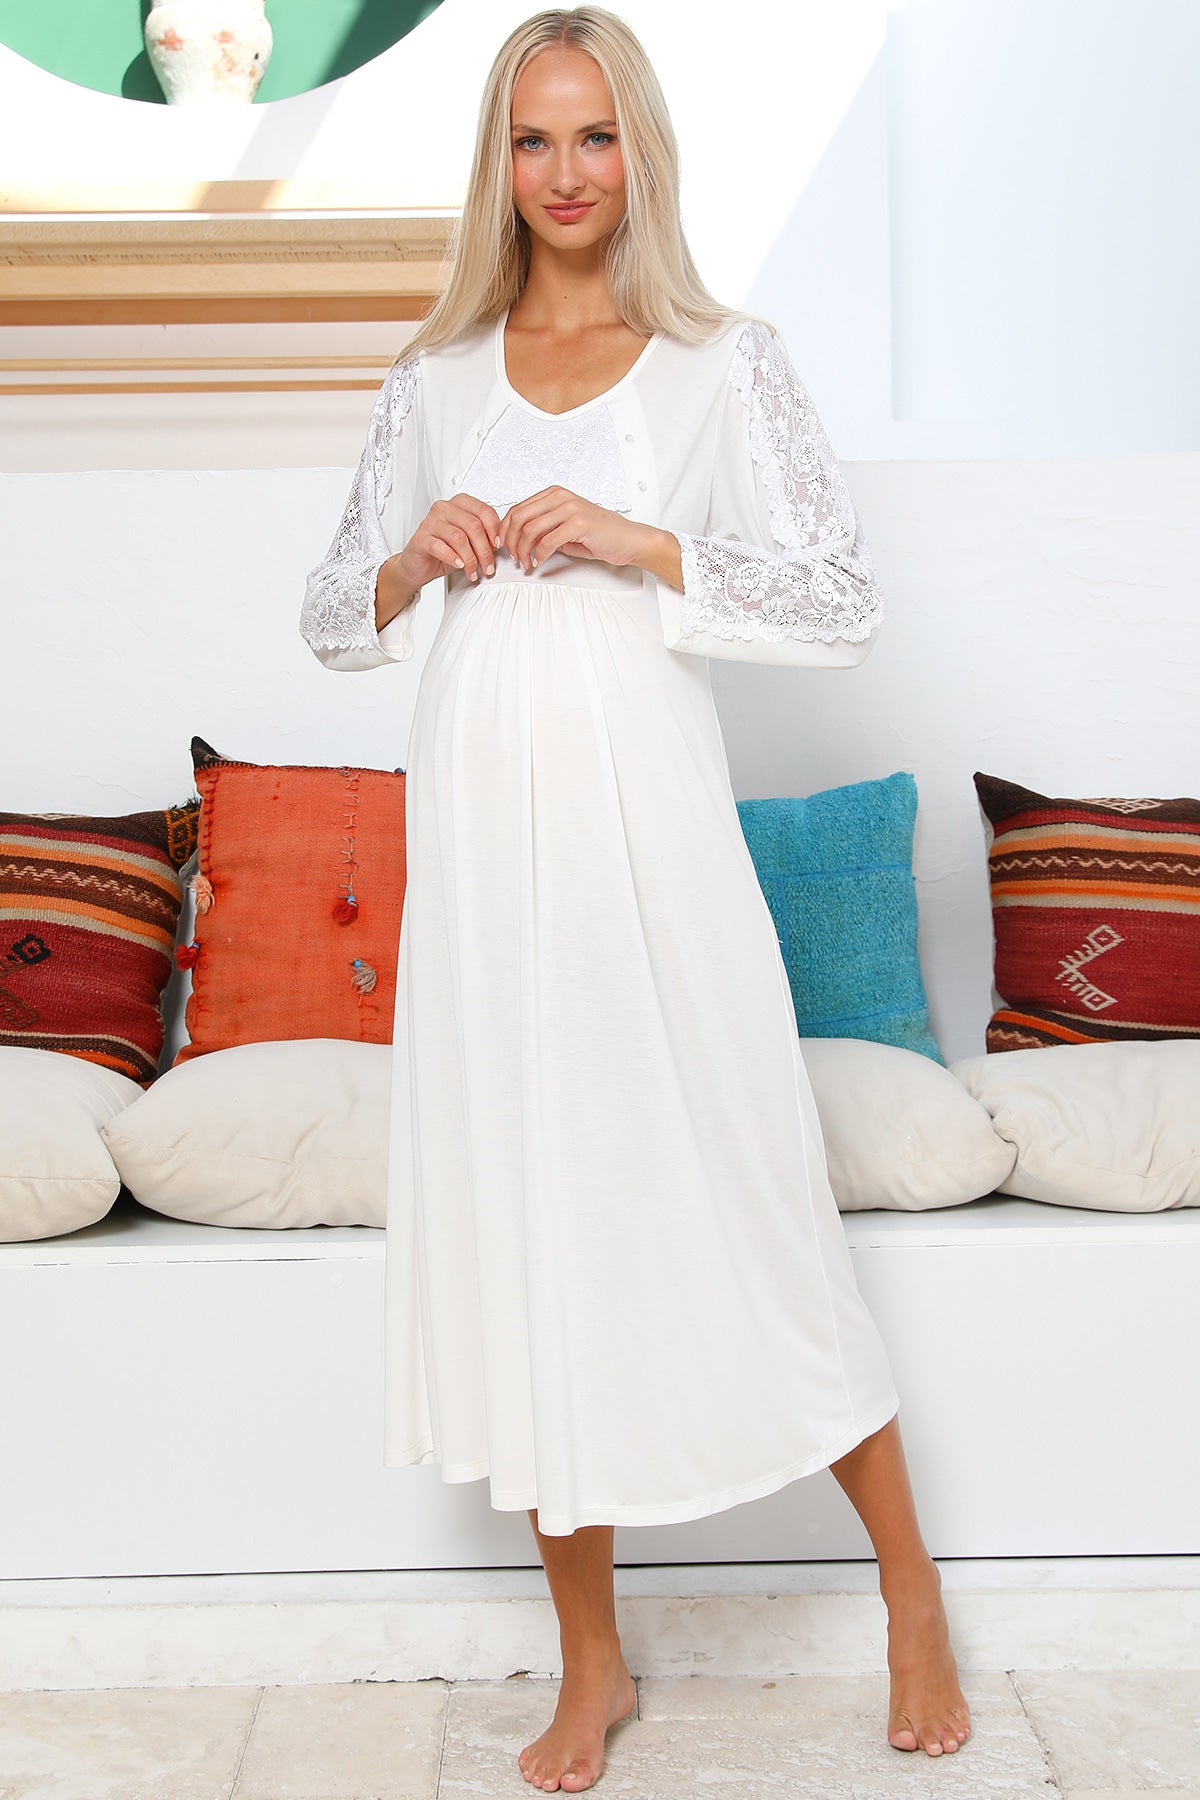 Shopymommy 55103 Elegance Lace Sleeves Maternity & Nursing Nightgown Ecru